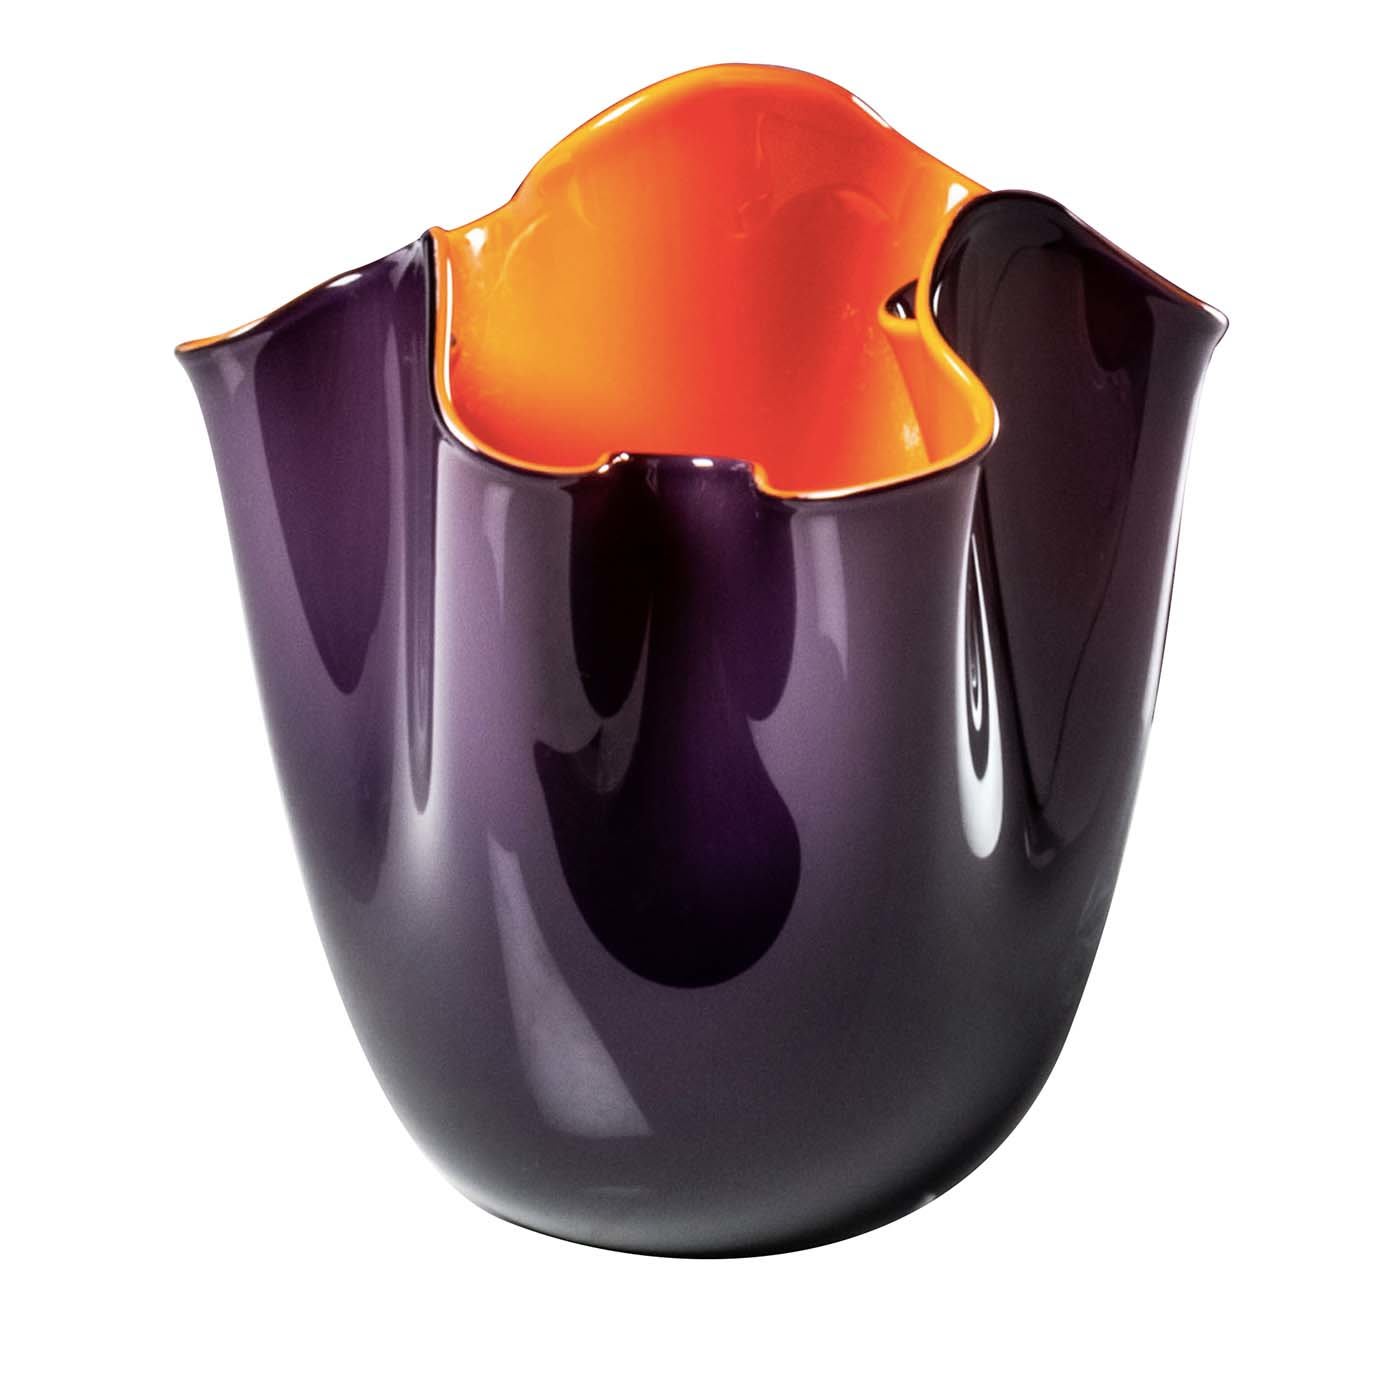 Fazzoletti Purple/Orange Vase by Fulvio Bianconi - Venini